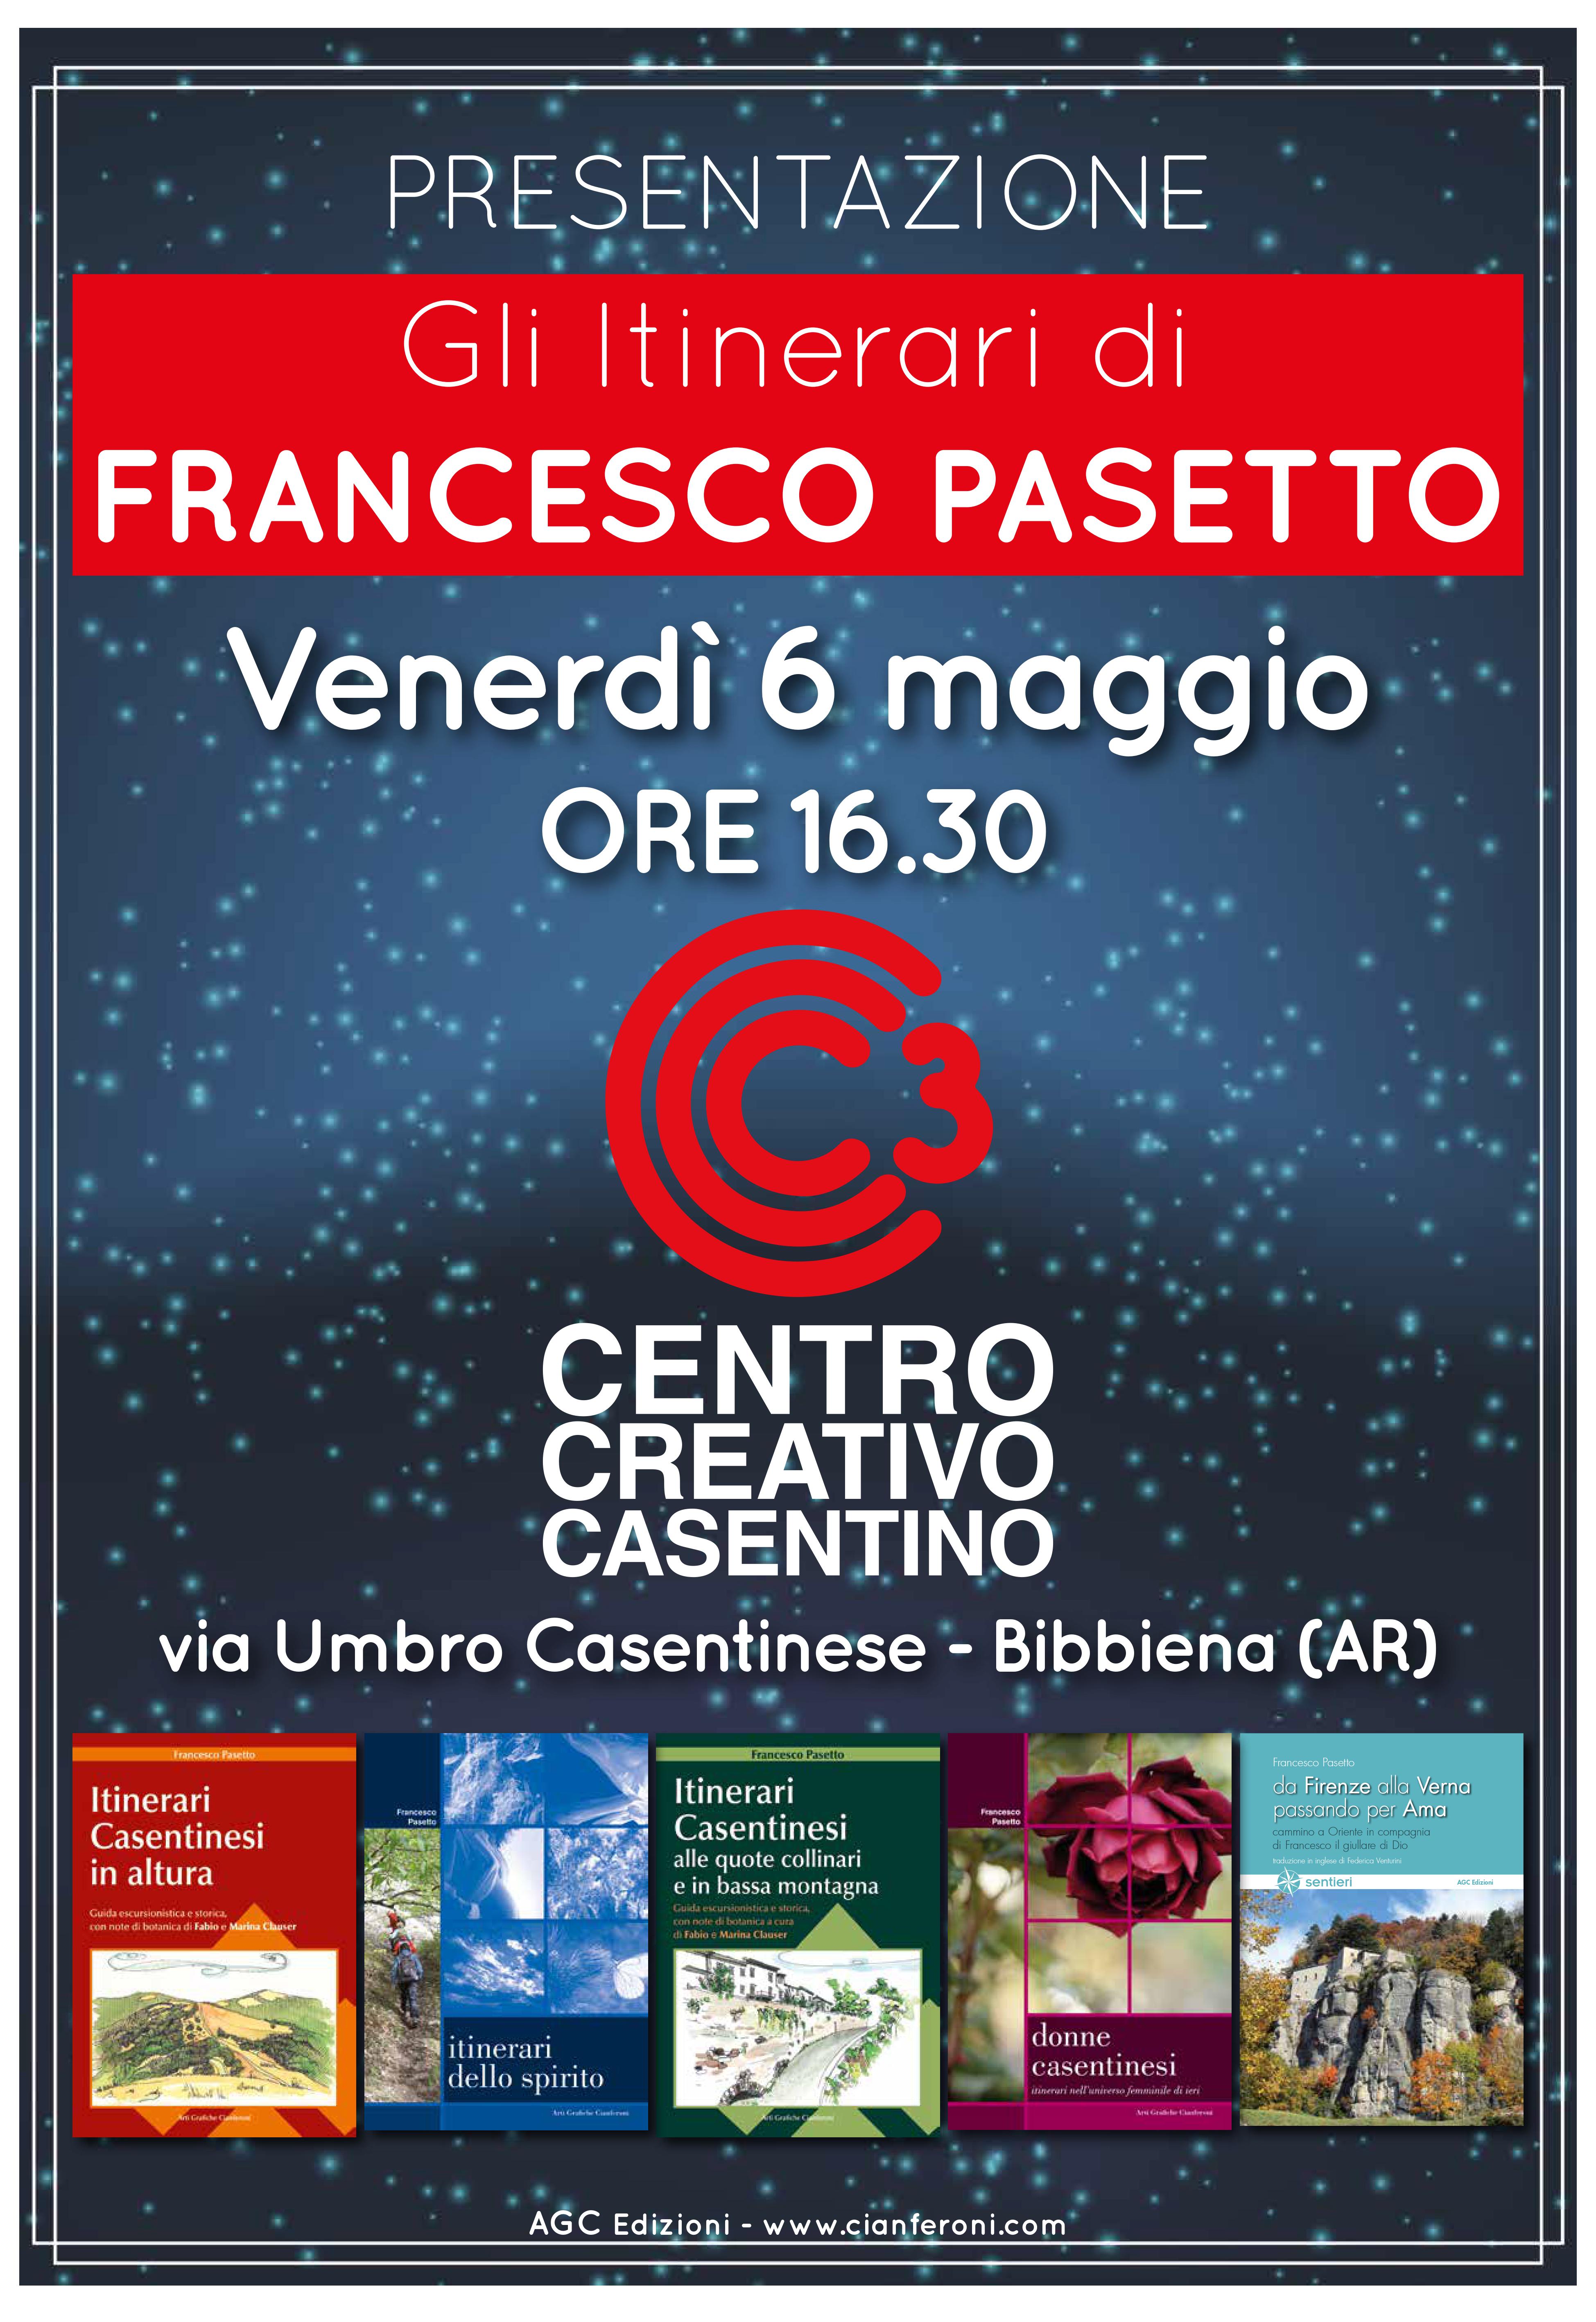 Presentazione “Gli itinerari di Francesco Pasetto”